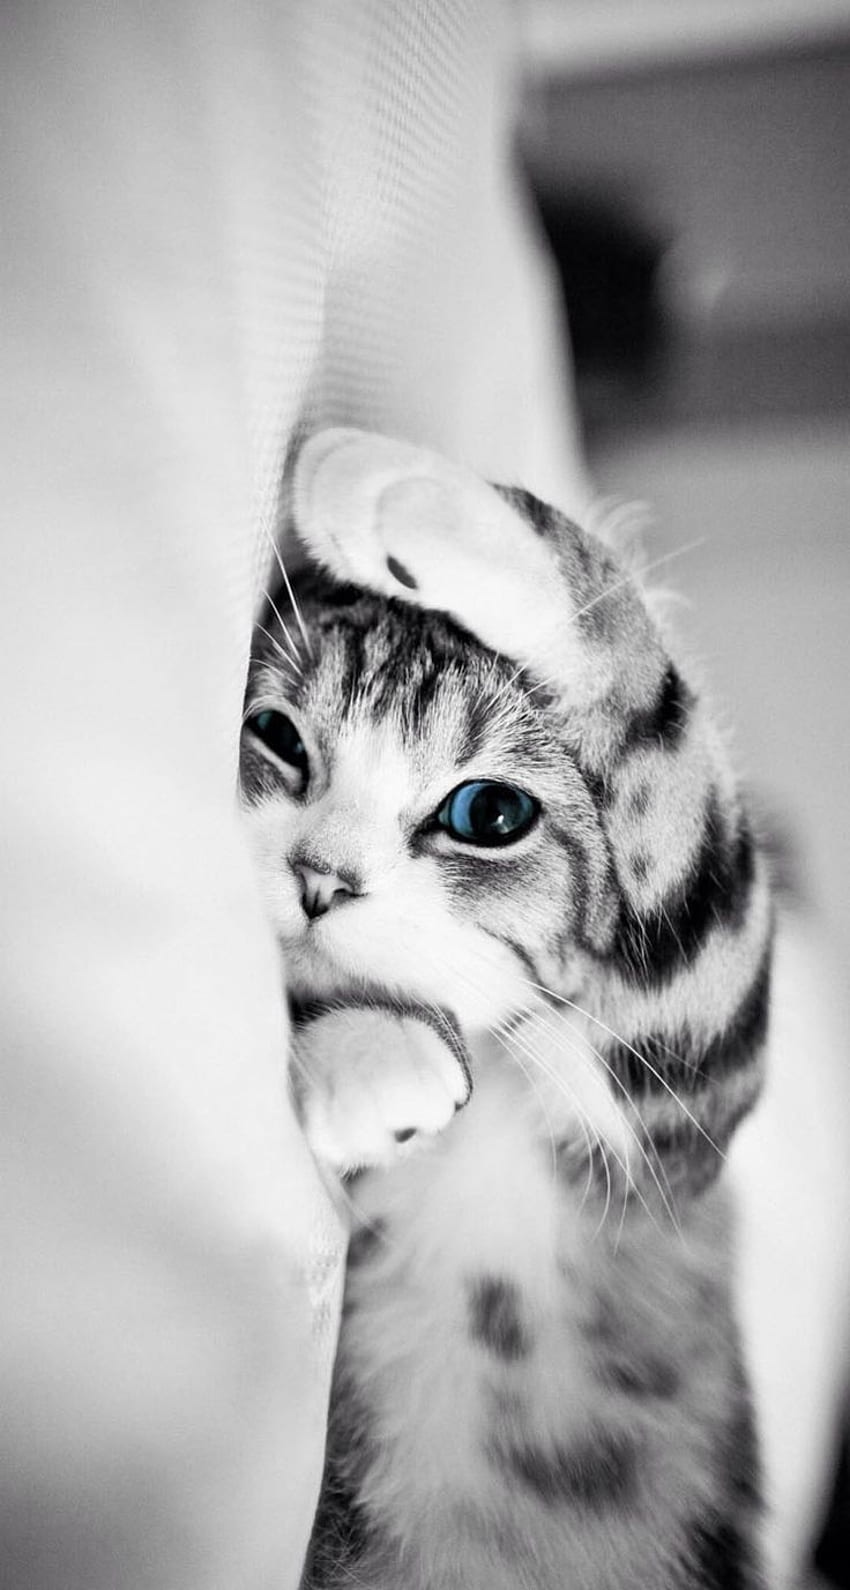 iPhone kucing lucu. Kucing cantik, Piaraan, Anak kucing lucu, Kucing Lucu wallpaper ponsel HD